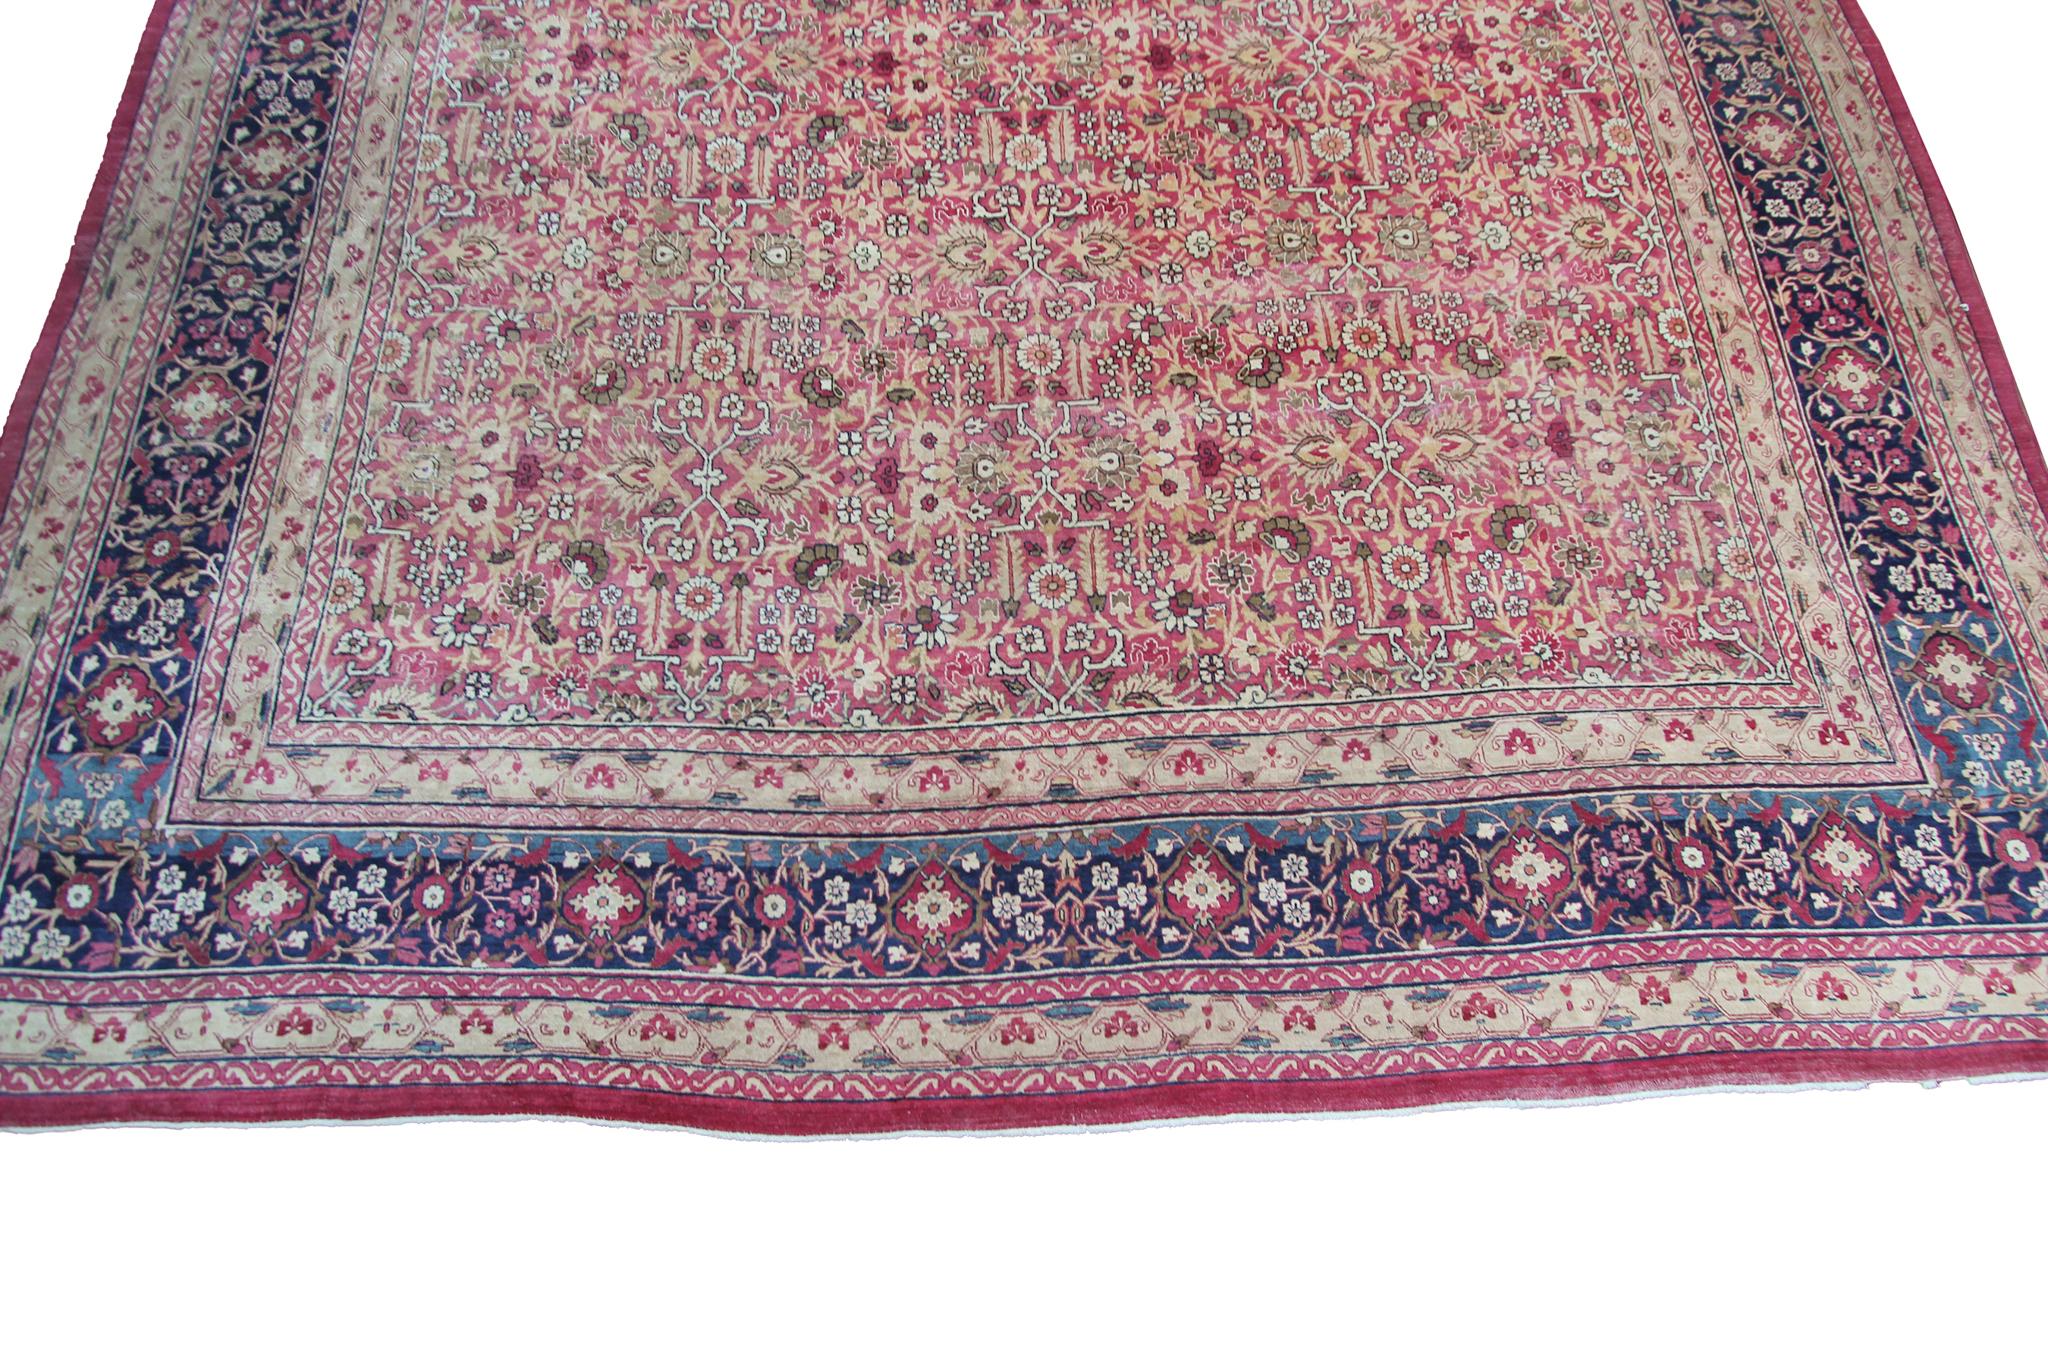 Late 19th Century c1870 Pink Antique Lavar Kermanshah Fine Geometric Rug 11x17ft 138cm x 519cm For Sale